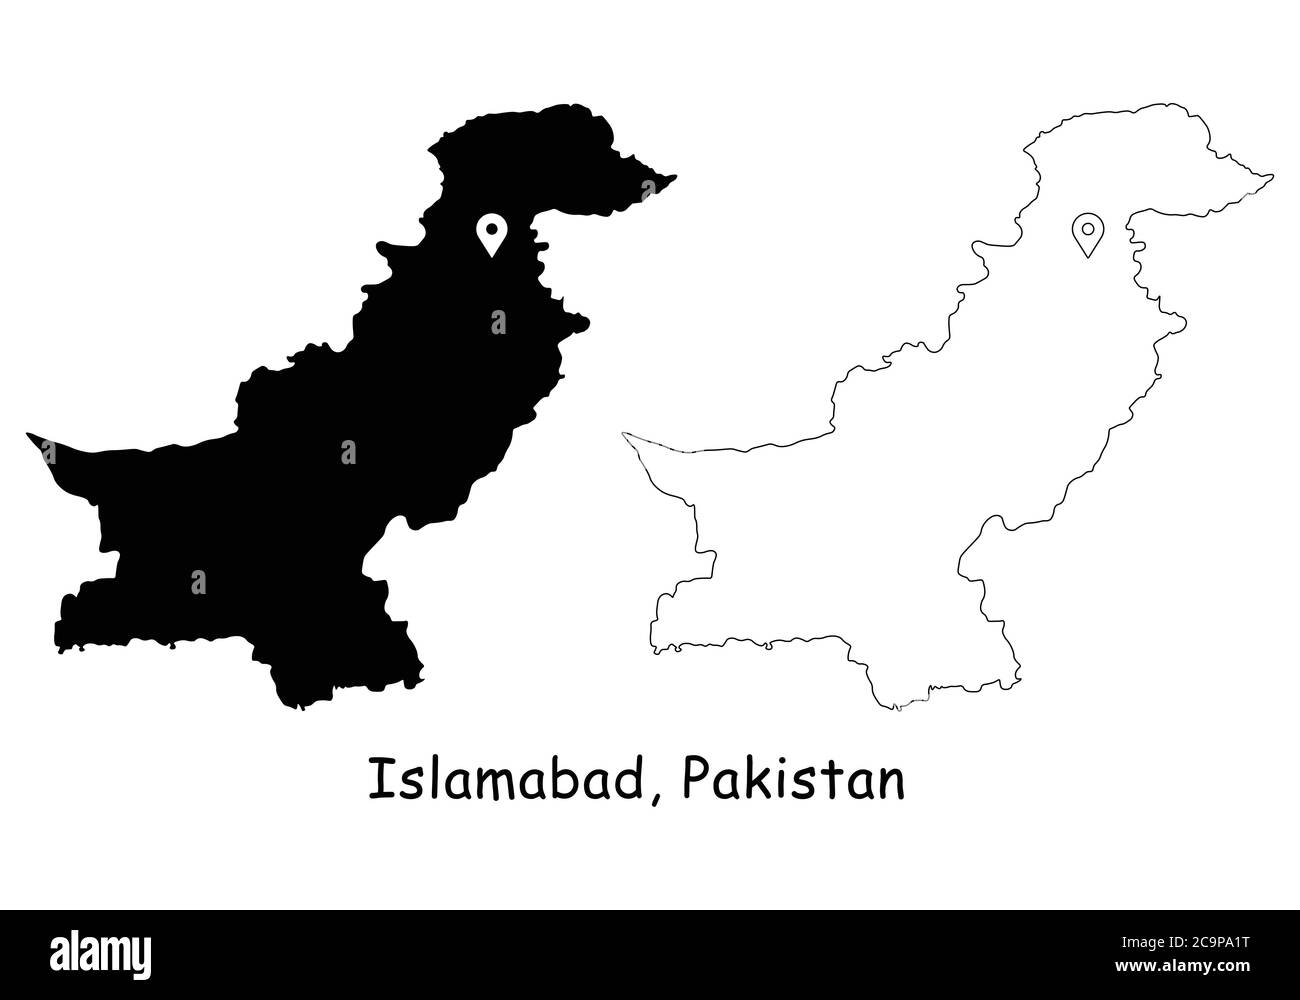 Islamabad, République islamique du Pakistan. Carte détaillée du pays avec broche d'emplacement sur Capital City. Cartes silhouettes et vectorielles noires isolées sur b blanc Illustration de Vecteur